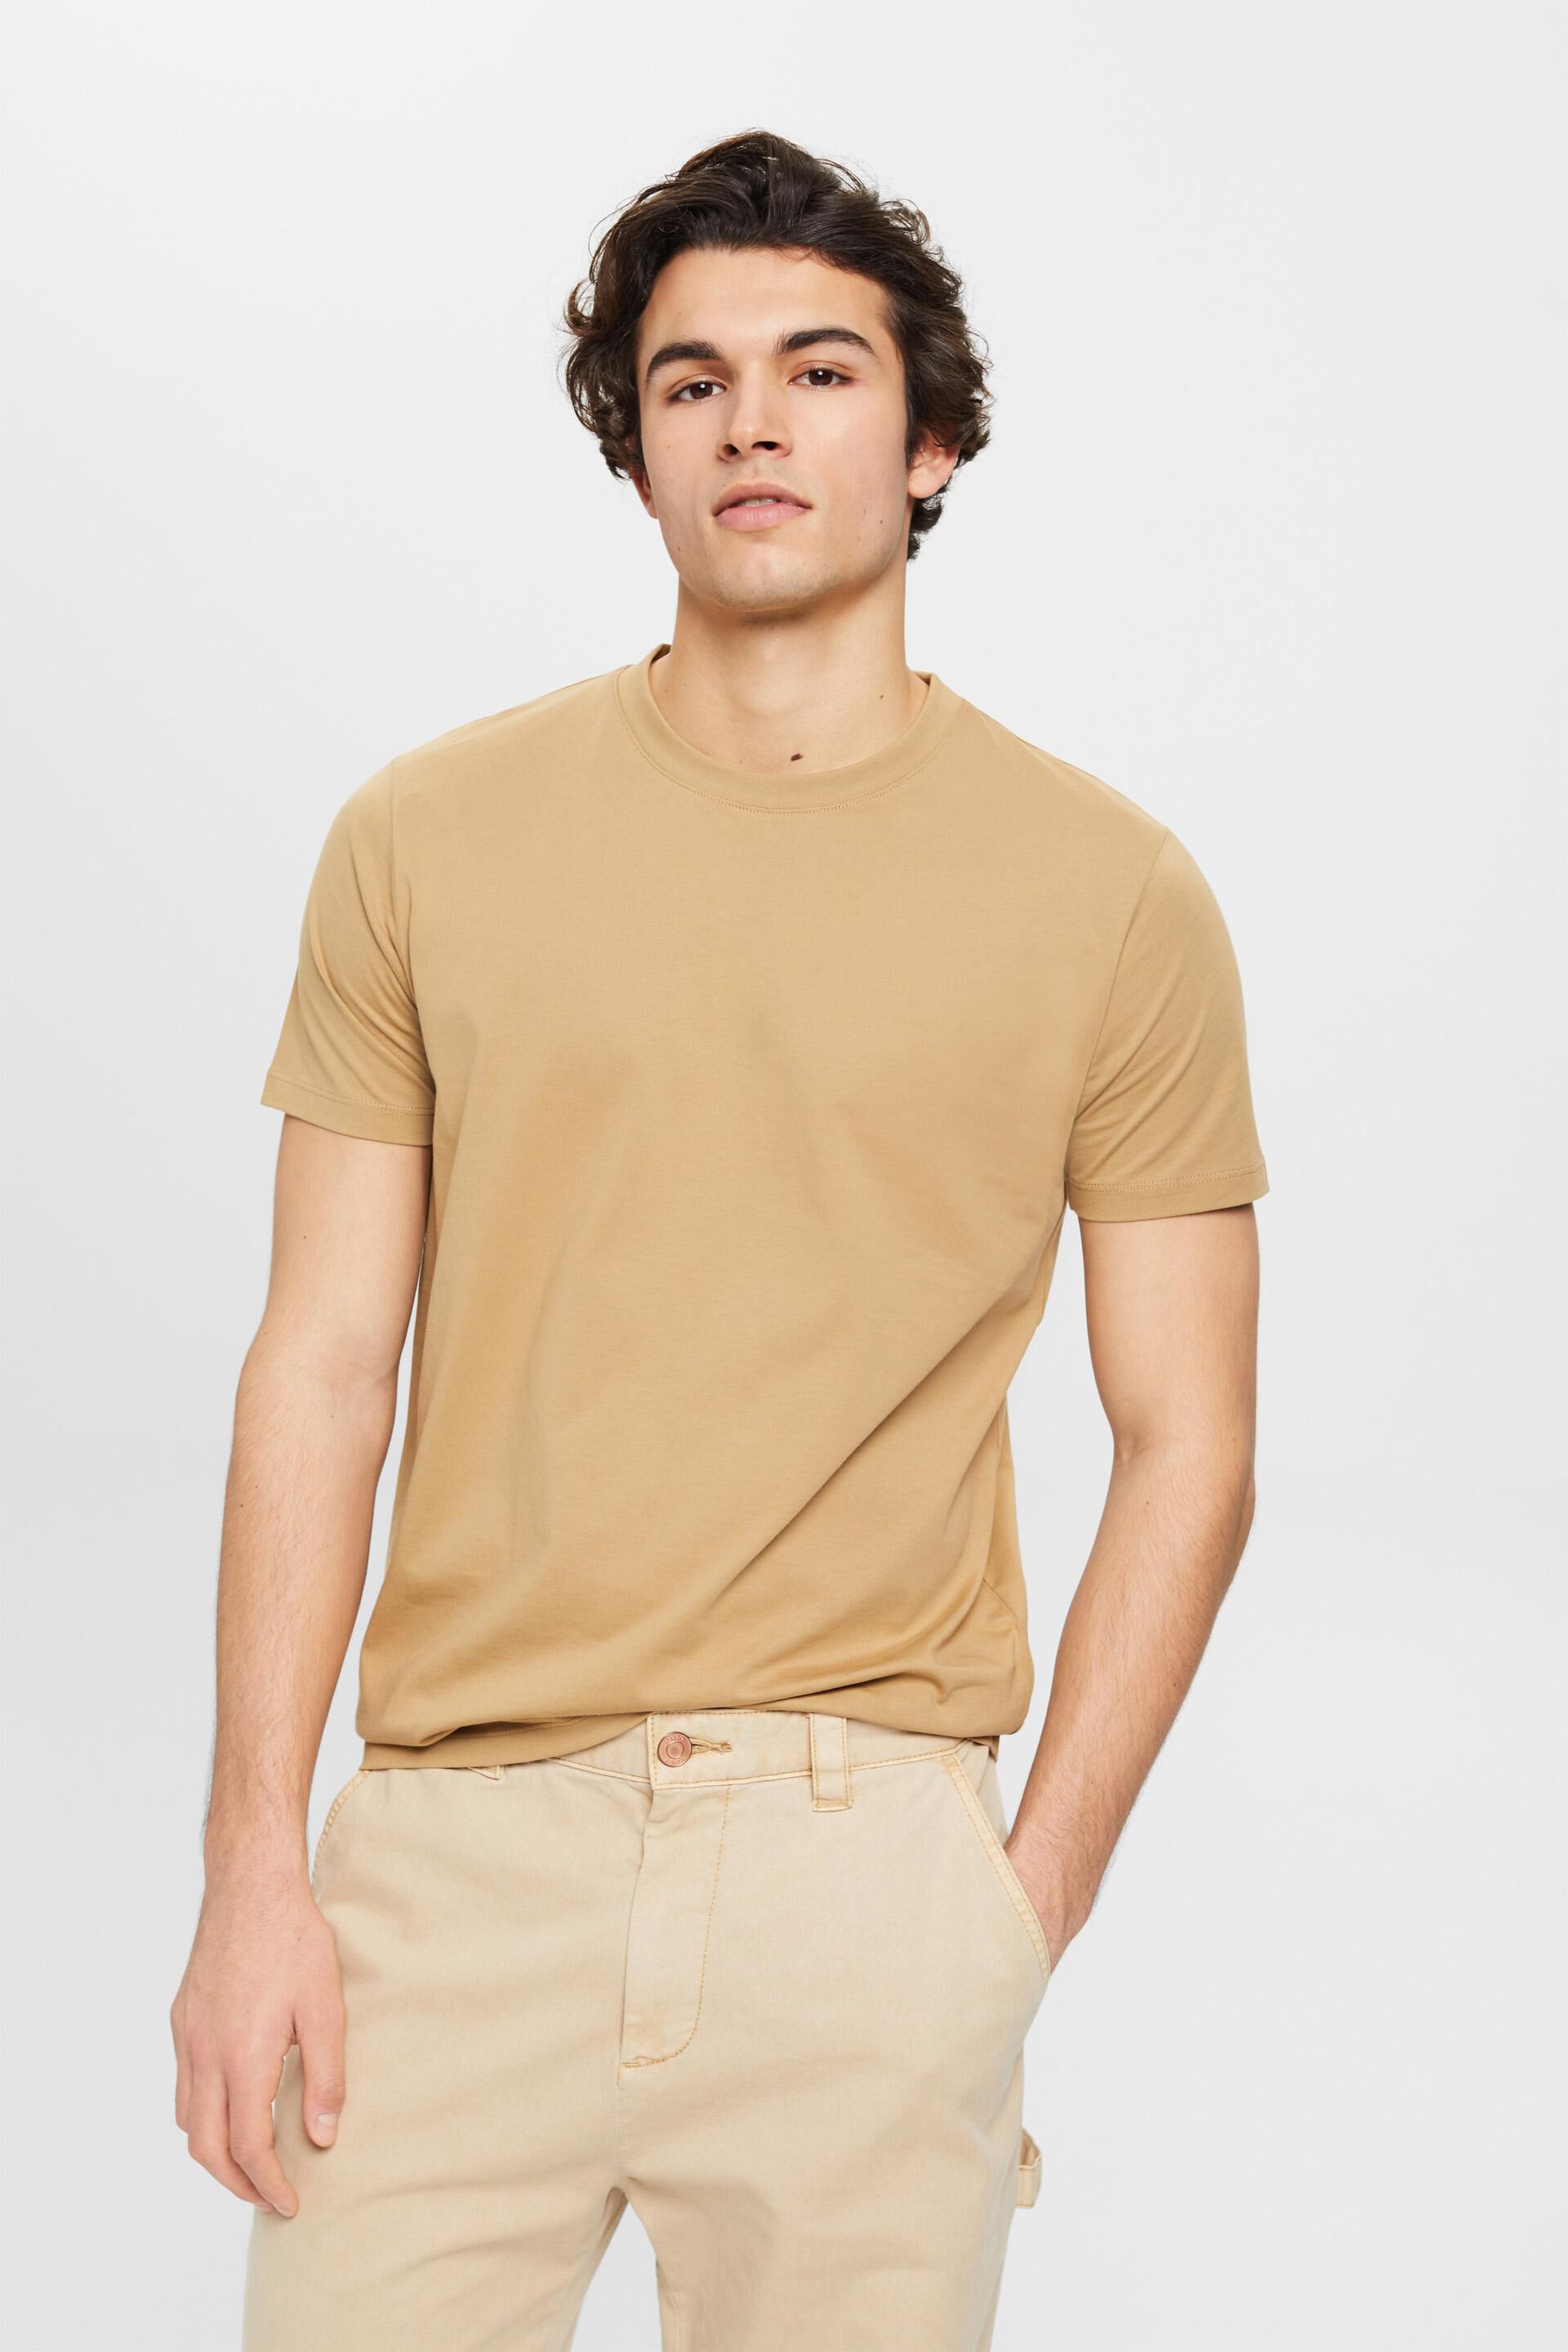 Esprit crew cotton t-shirt neck Pure